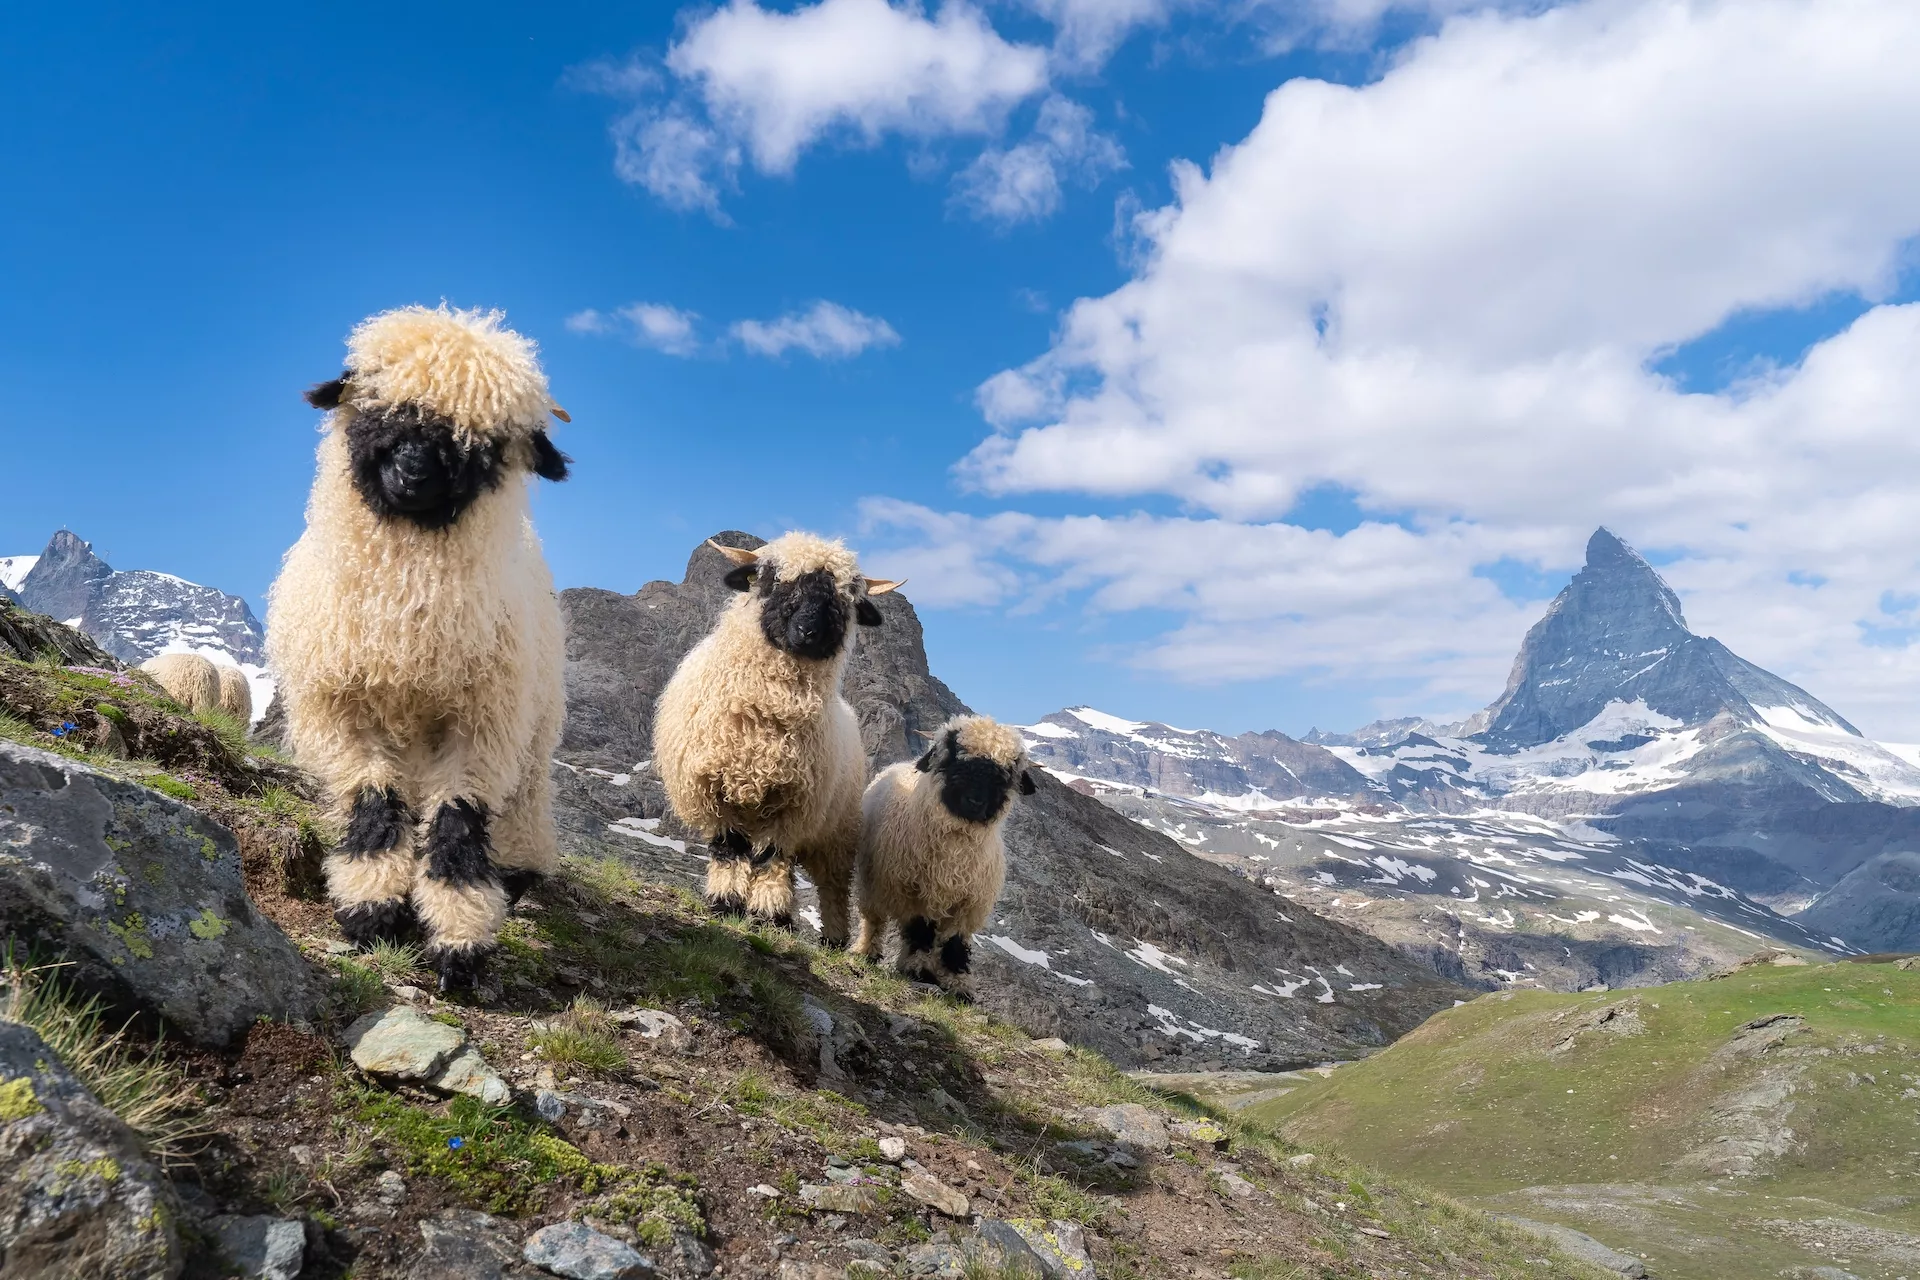 Walliser Blacknose-schapen voor de Matterhorn